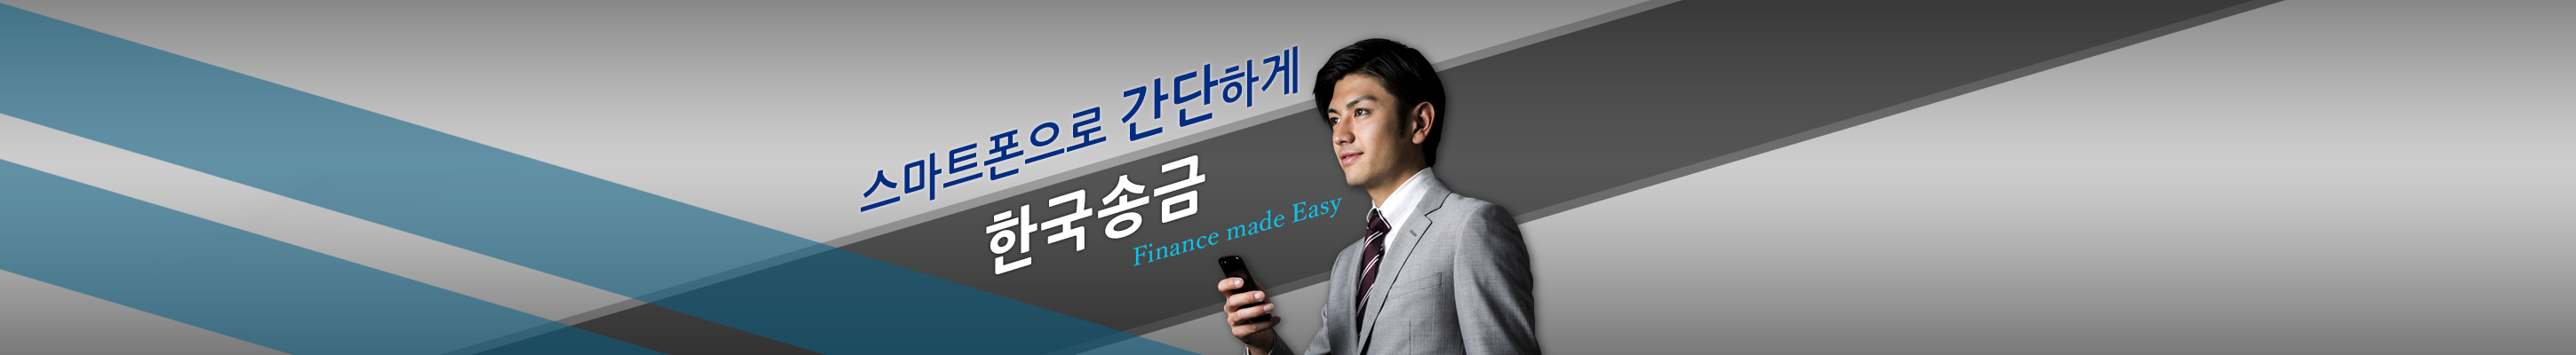 스마트폰으로 간단하게 한국송금